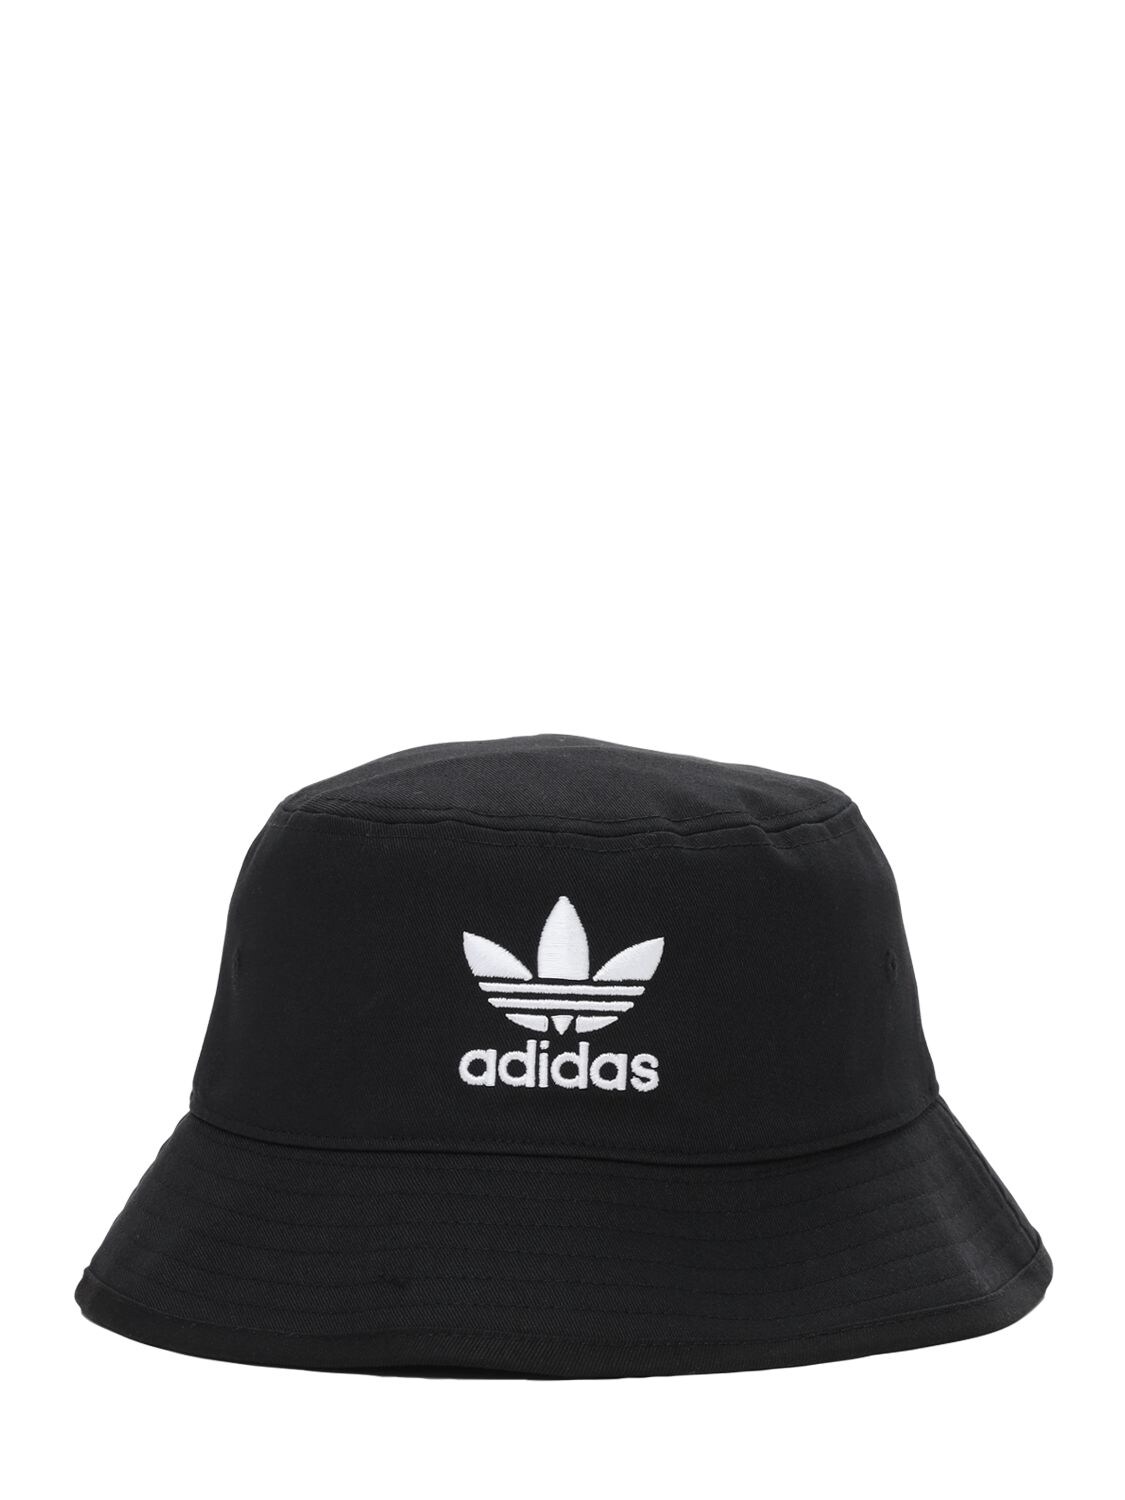 Adidas Originals Logo渔夫帽 In Black